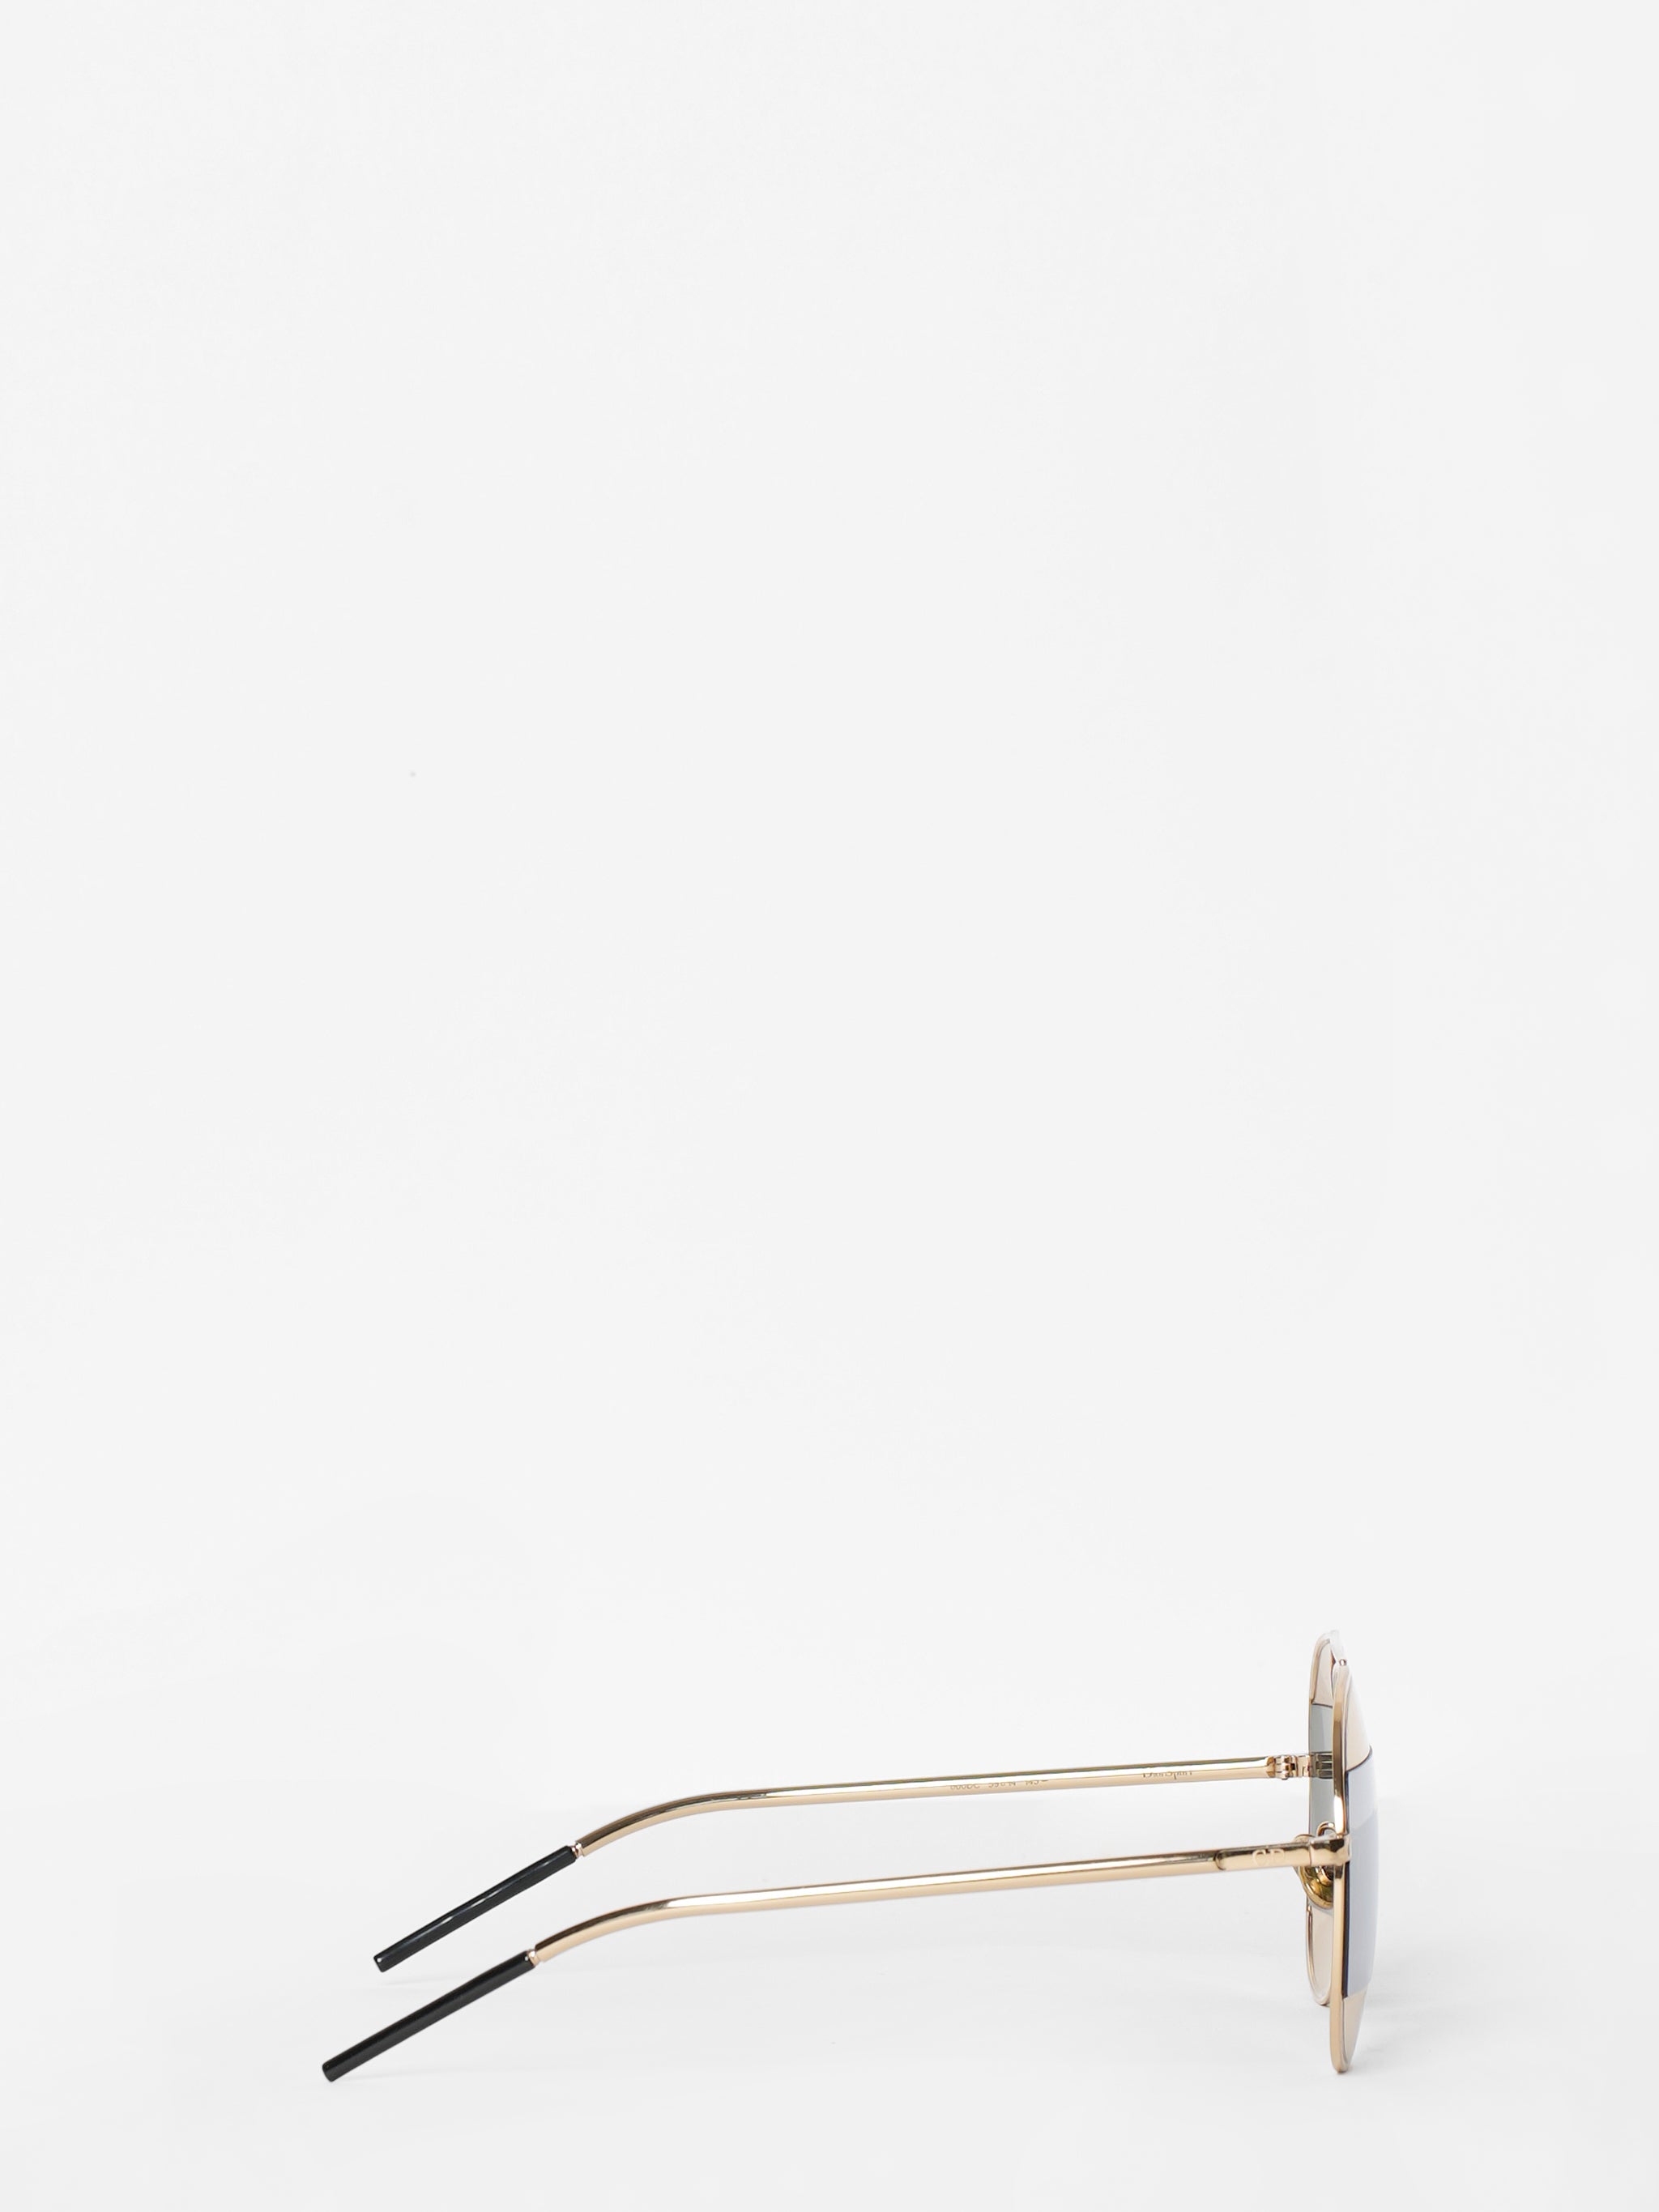 Christian Dior Split Aviator Sunglasses